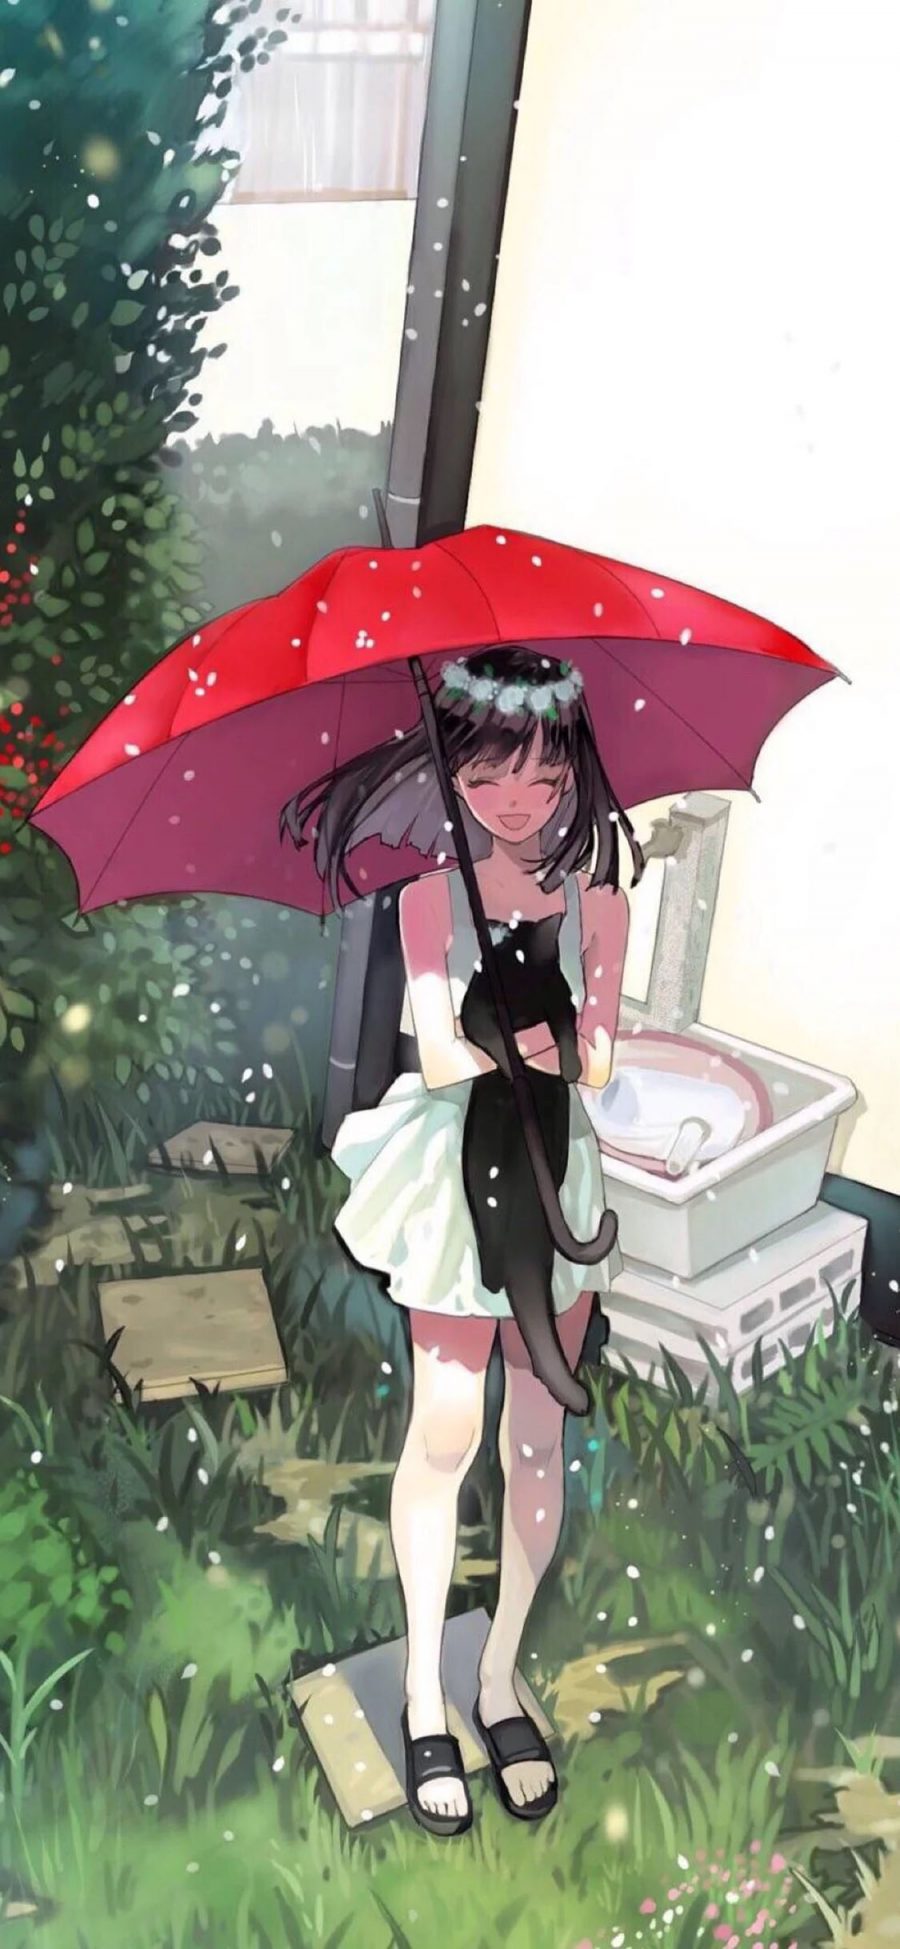 [2436×1125]二次元女孩 雨天 红伞 黑猫 苹果手机动漫壁纸图片